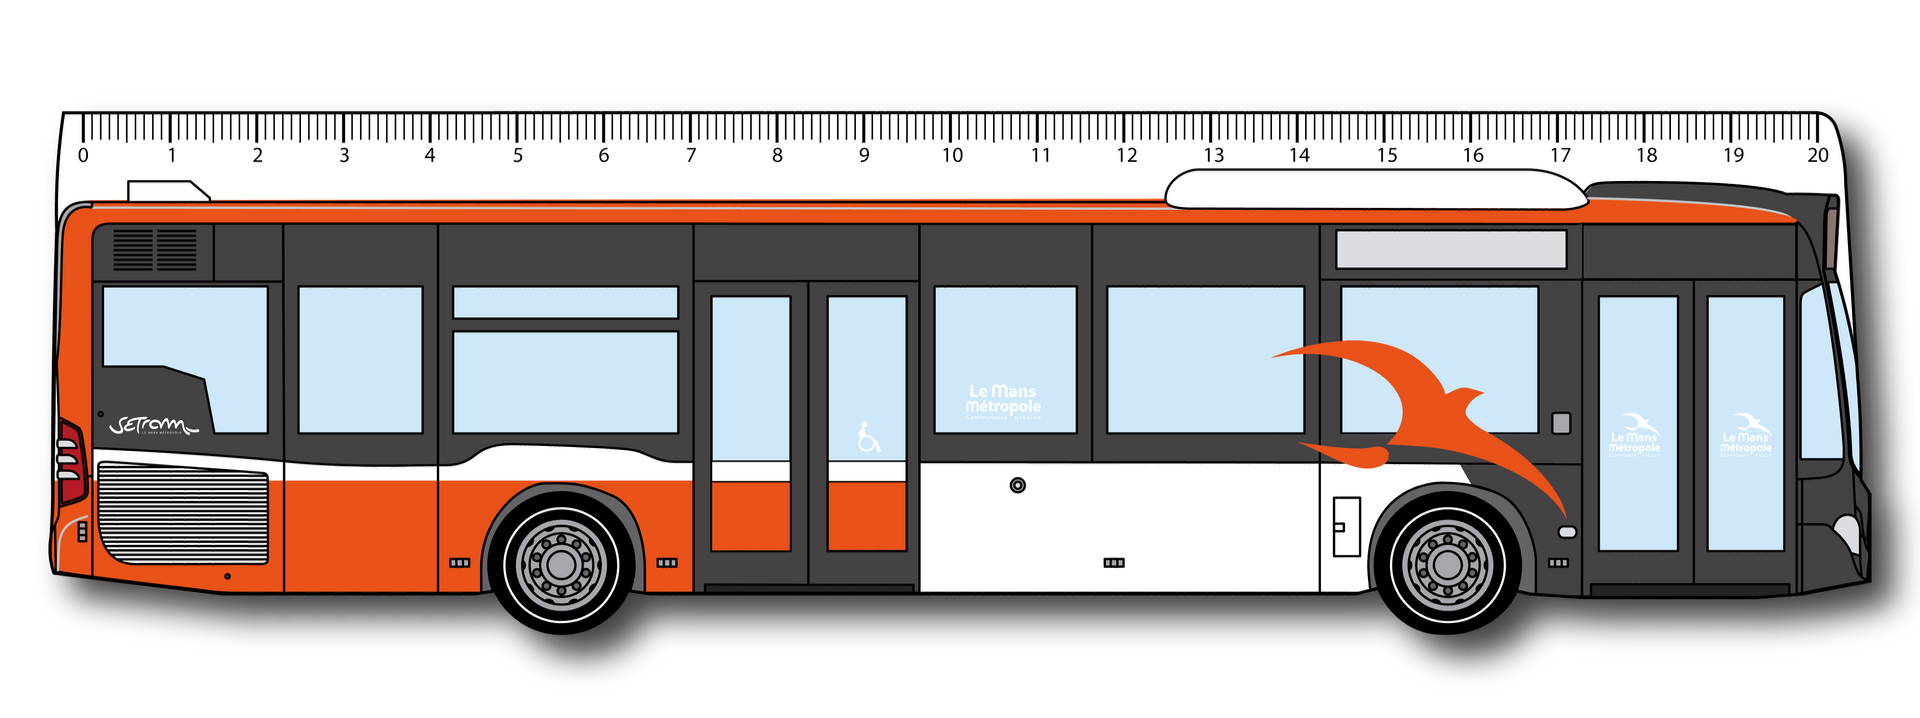 Règles transports 100% personnalisables. Train, bus , car, tramway, camion, Lemans